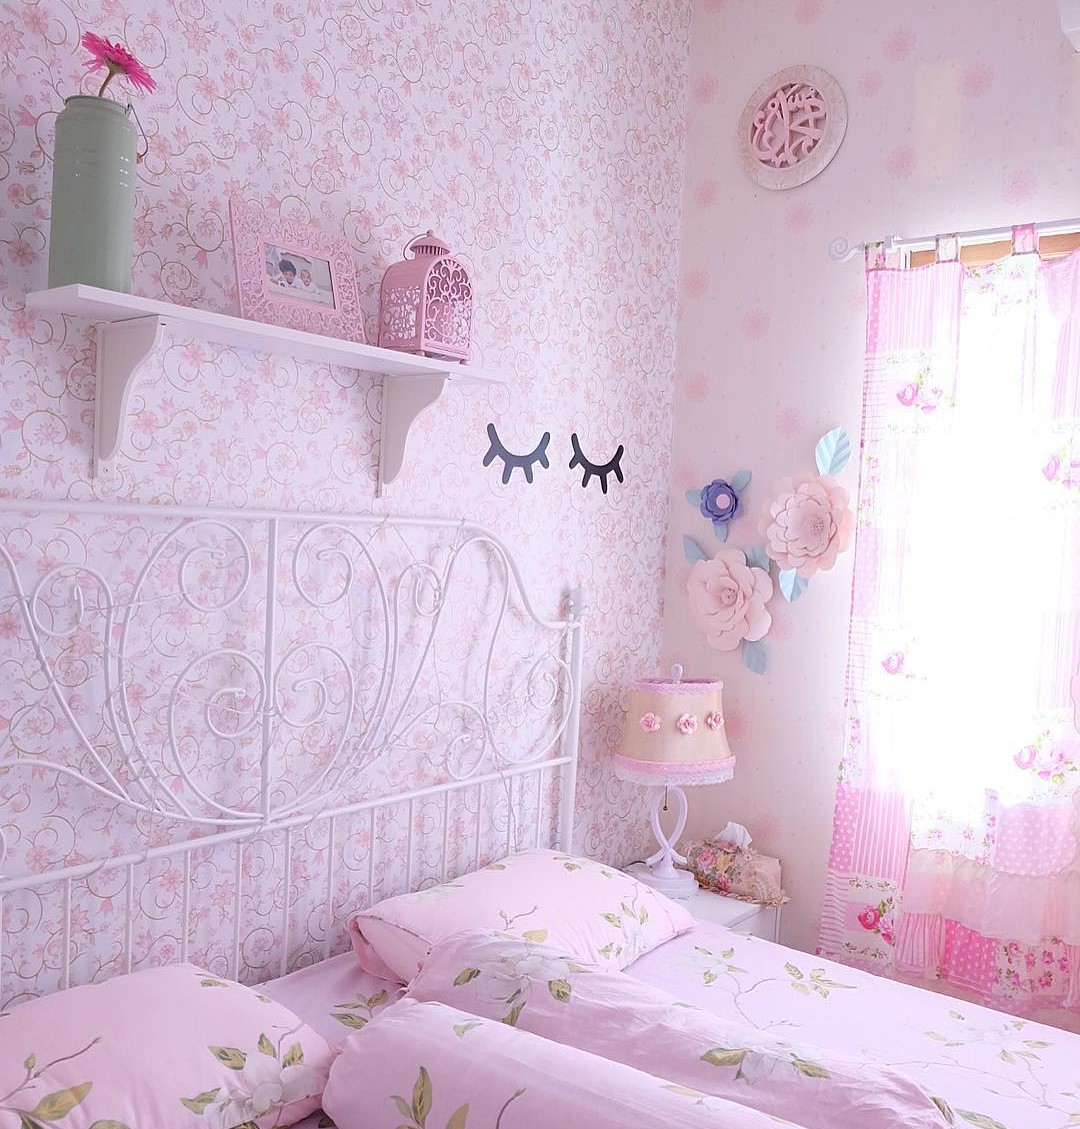 dekorasi kamar tidur shabby chic dengan wallpaper dinding motif bunga yang cantik warna pink